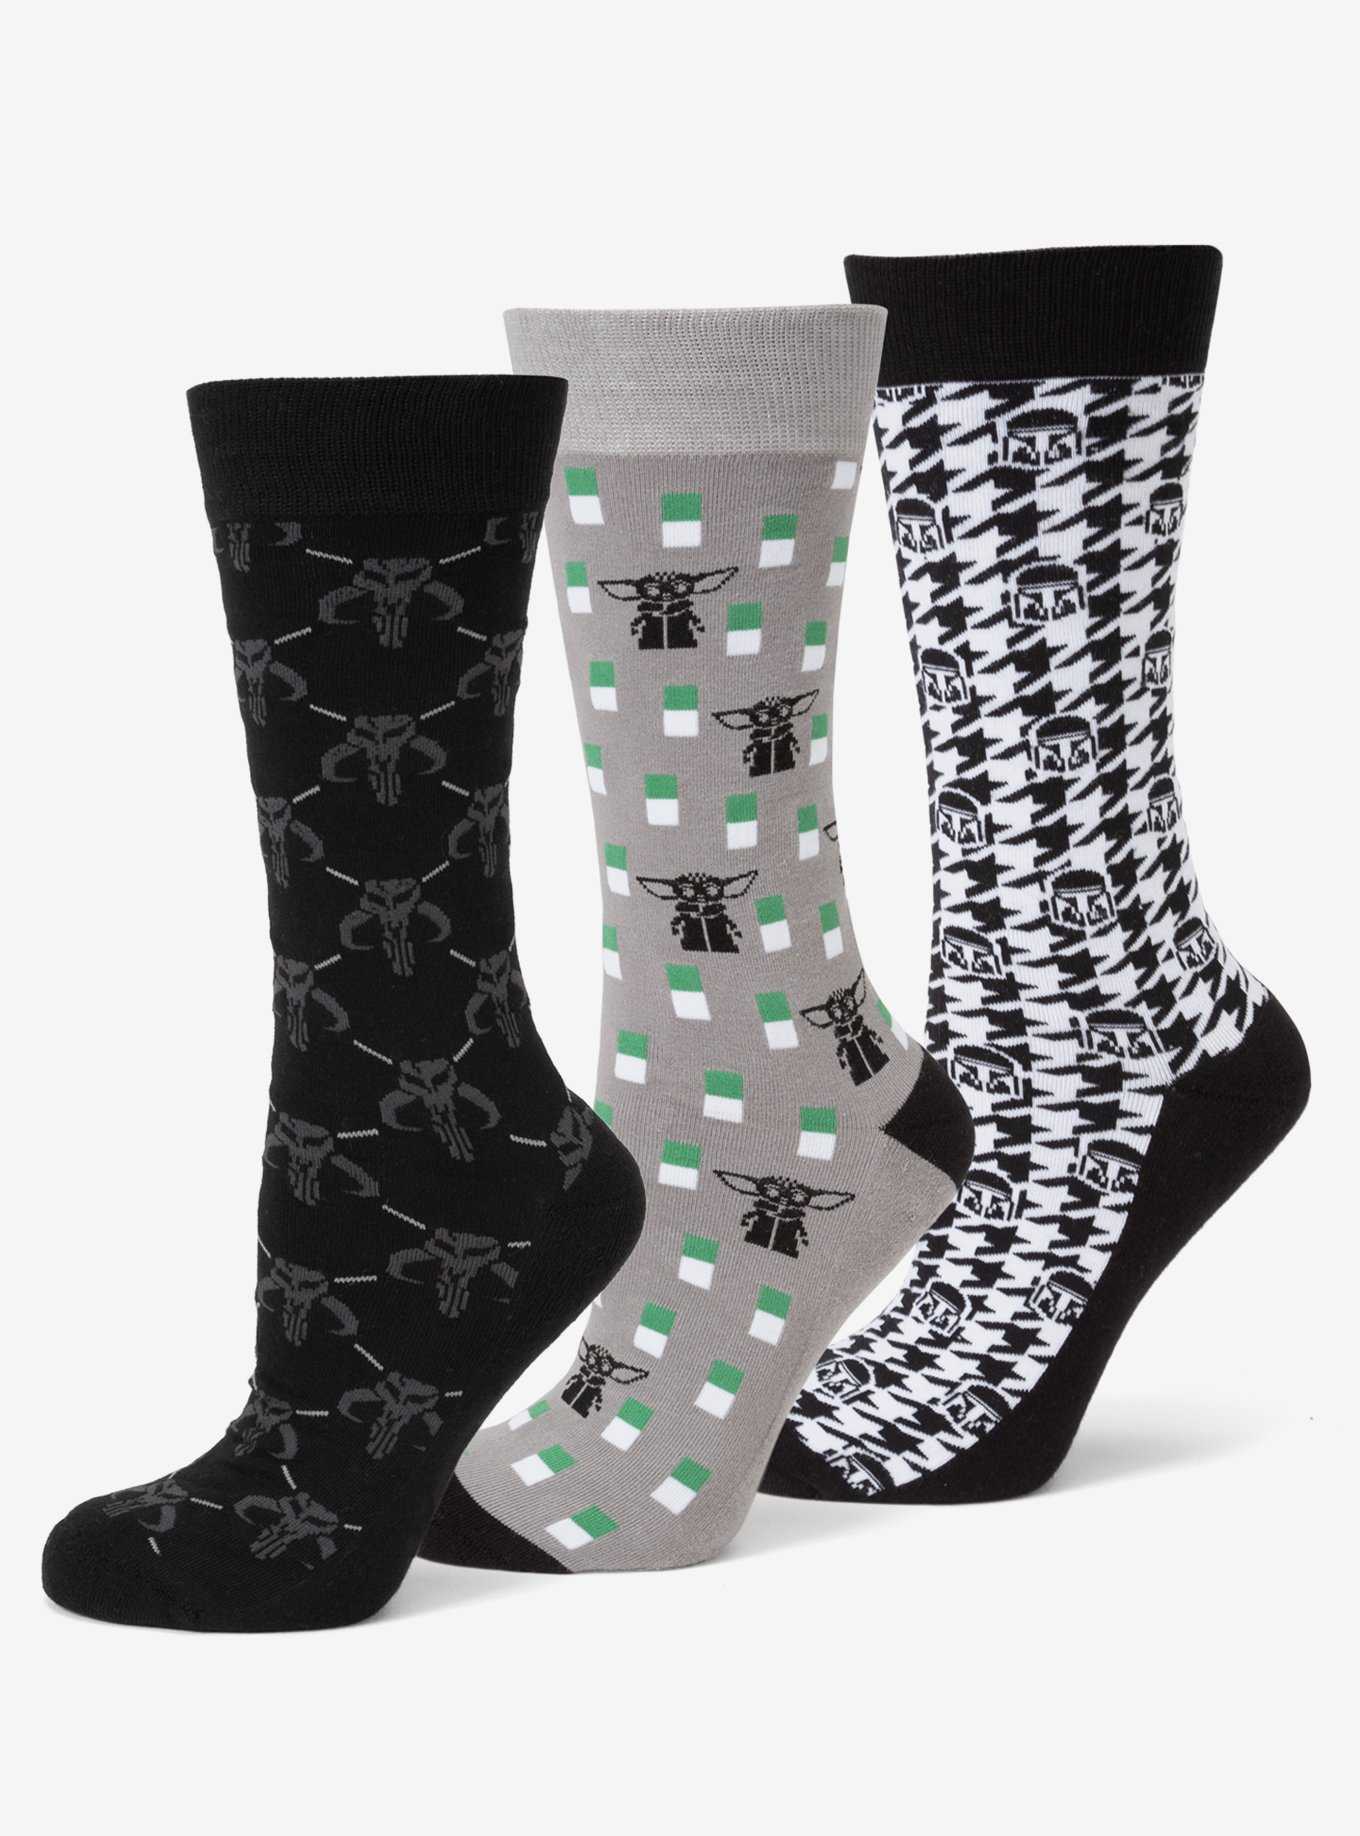 Star Wars The Mandalorian 3 Pair Socks Gift Set, , hi-res